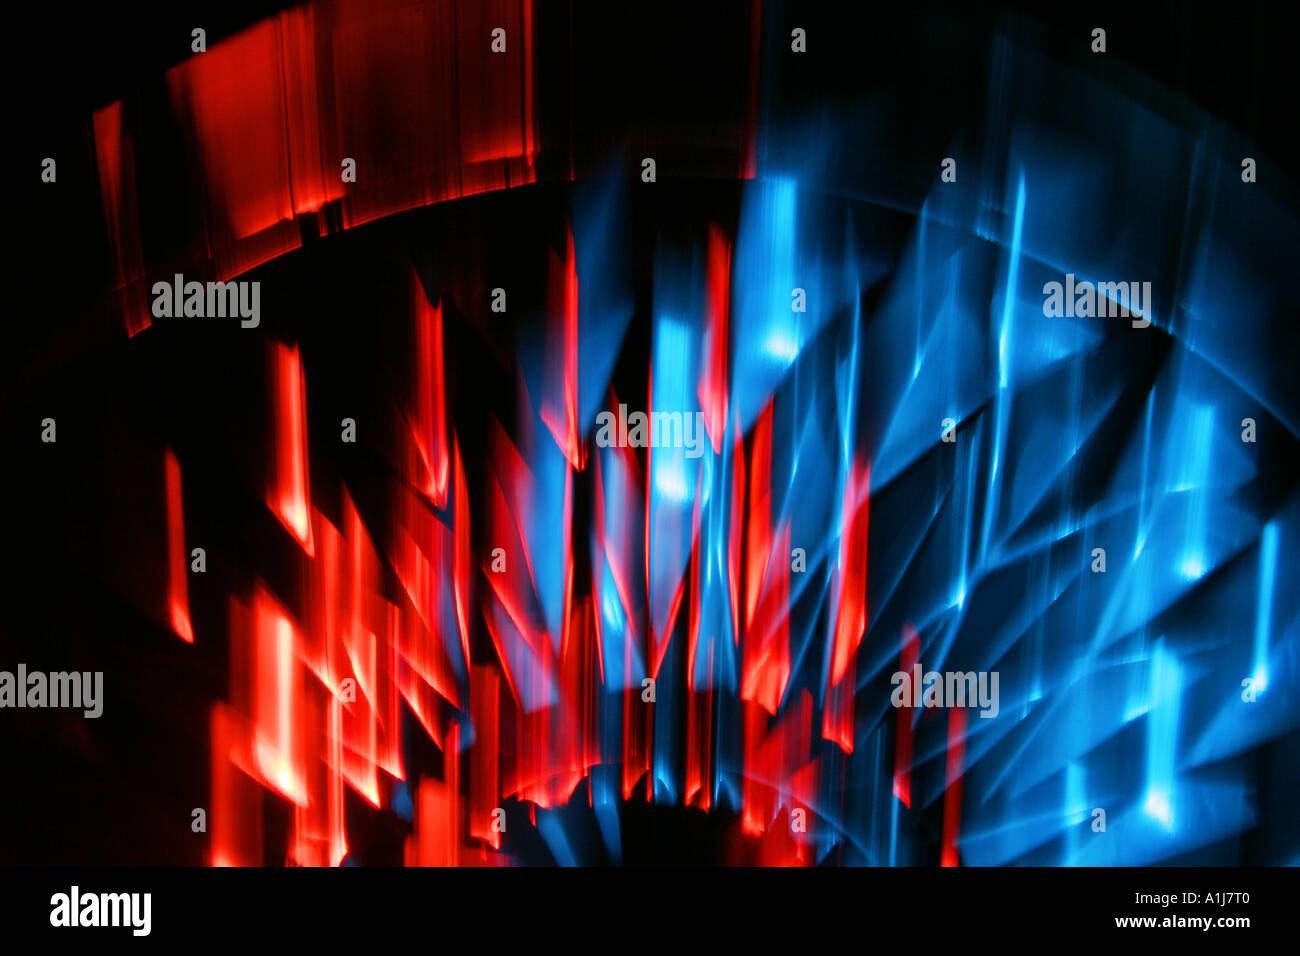 Conception abstraite créée dans une plaque de verre en cristal coupée avec lumière rouge et bleue Banque D'Images